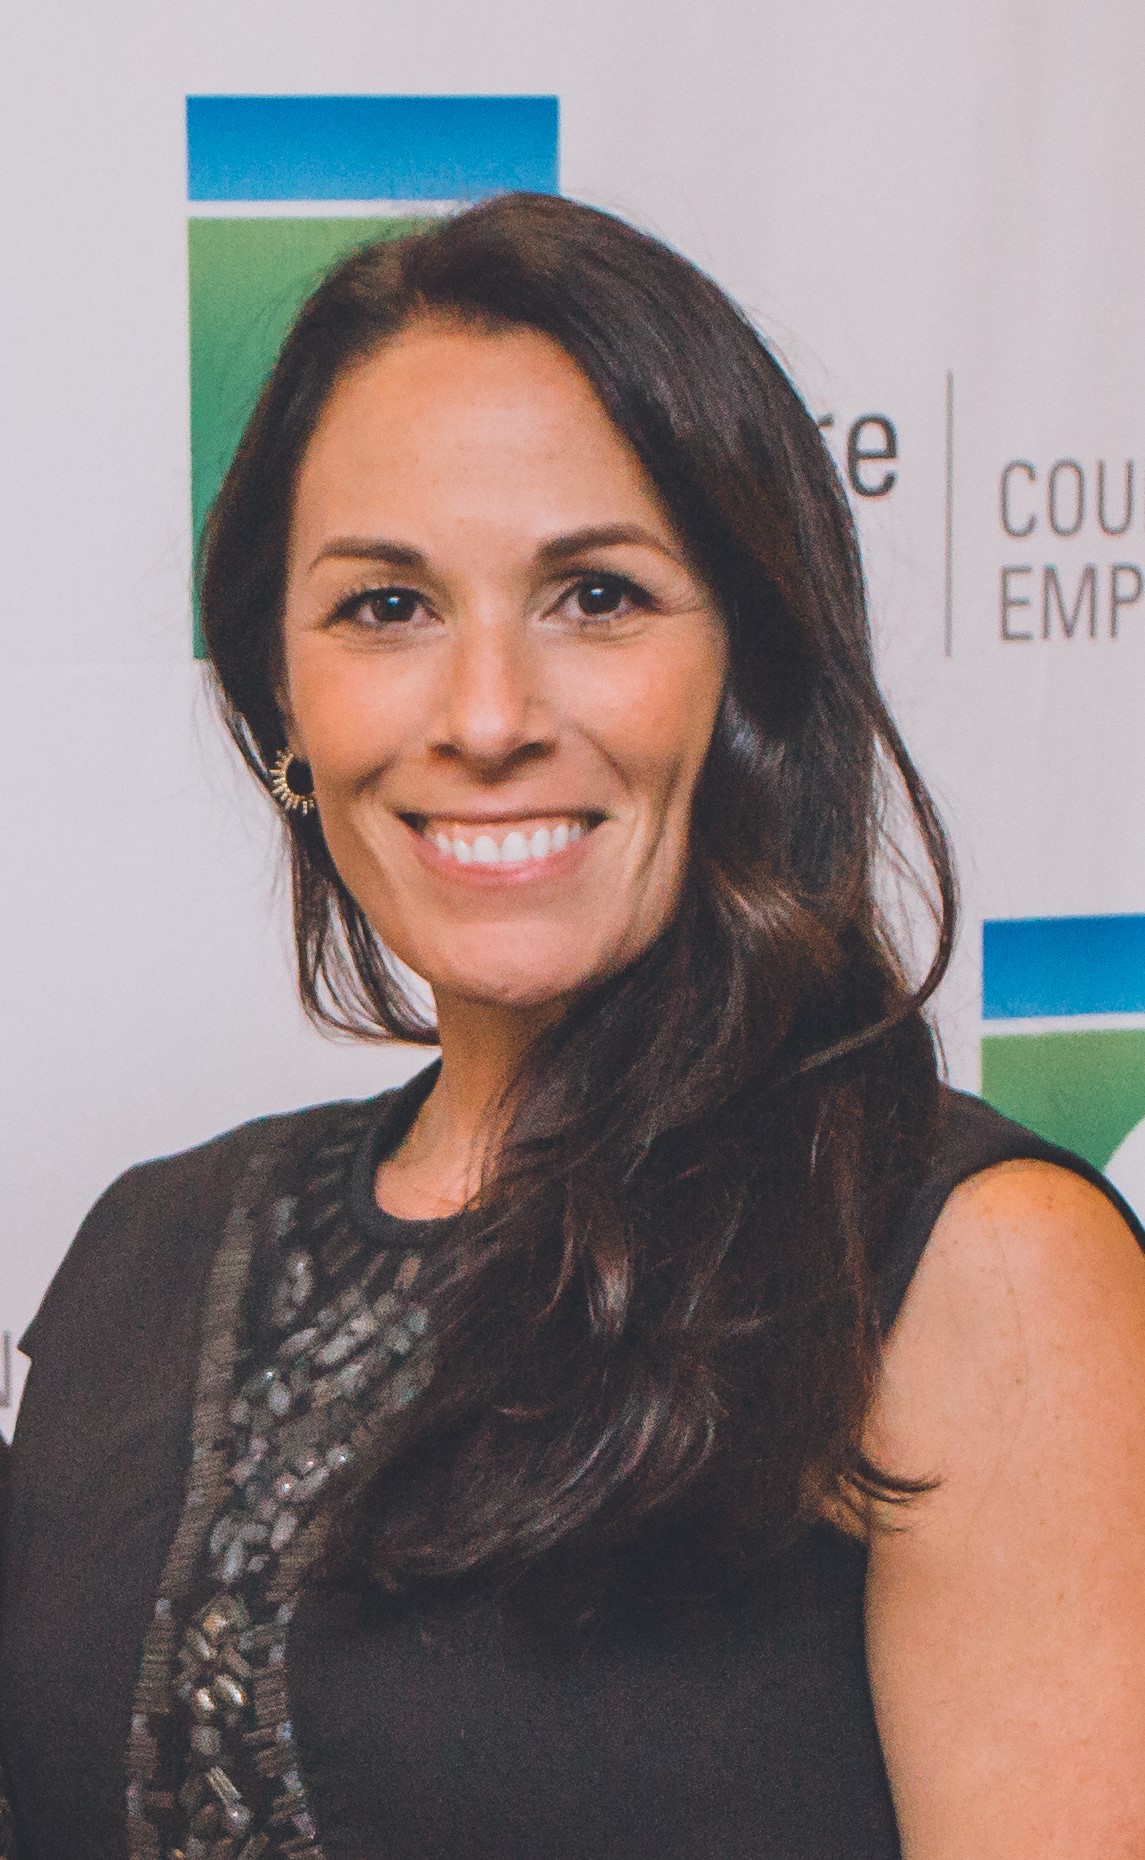 Melinda Marinaccio, Director of Fundraising